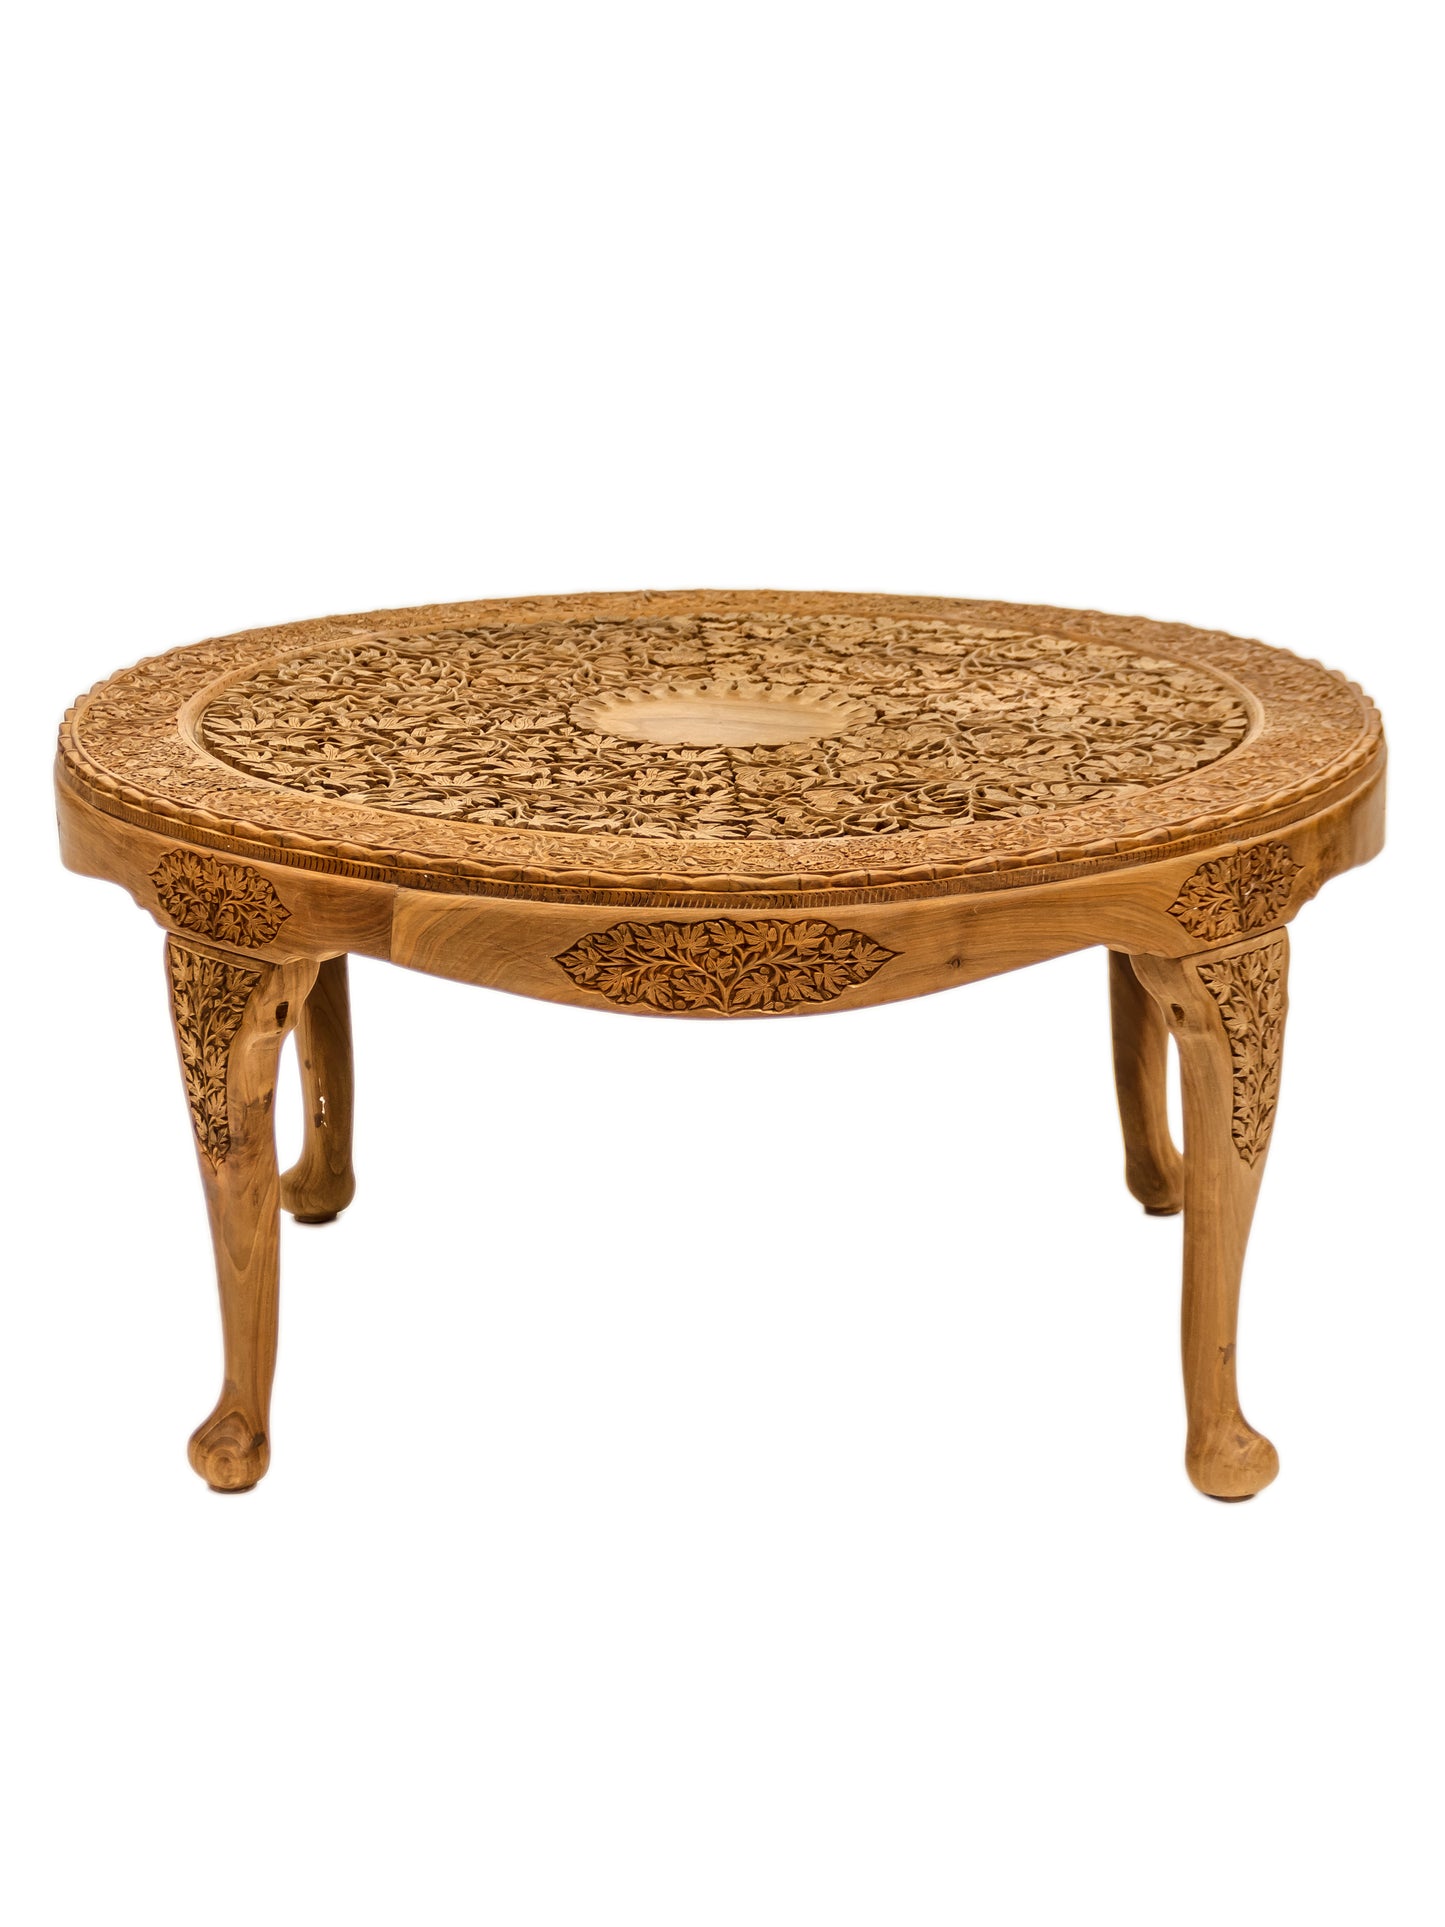 Handmade Walnut Table "4 seasons" product image #29720065015978